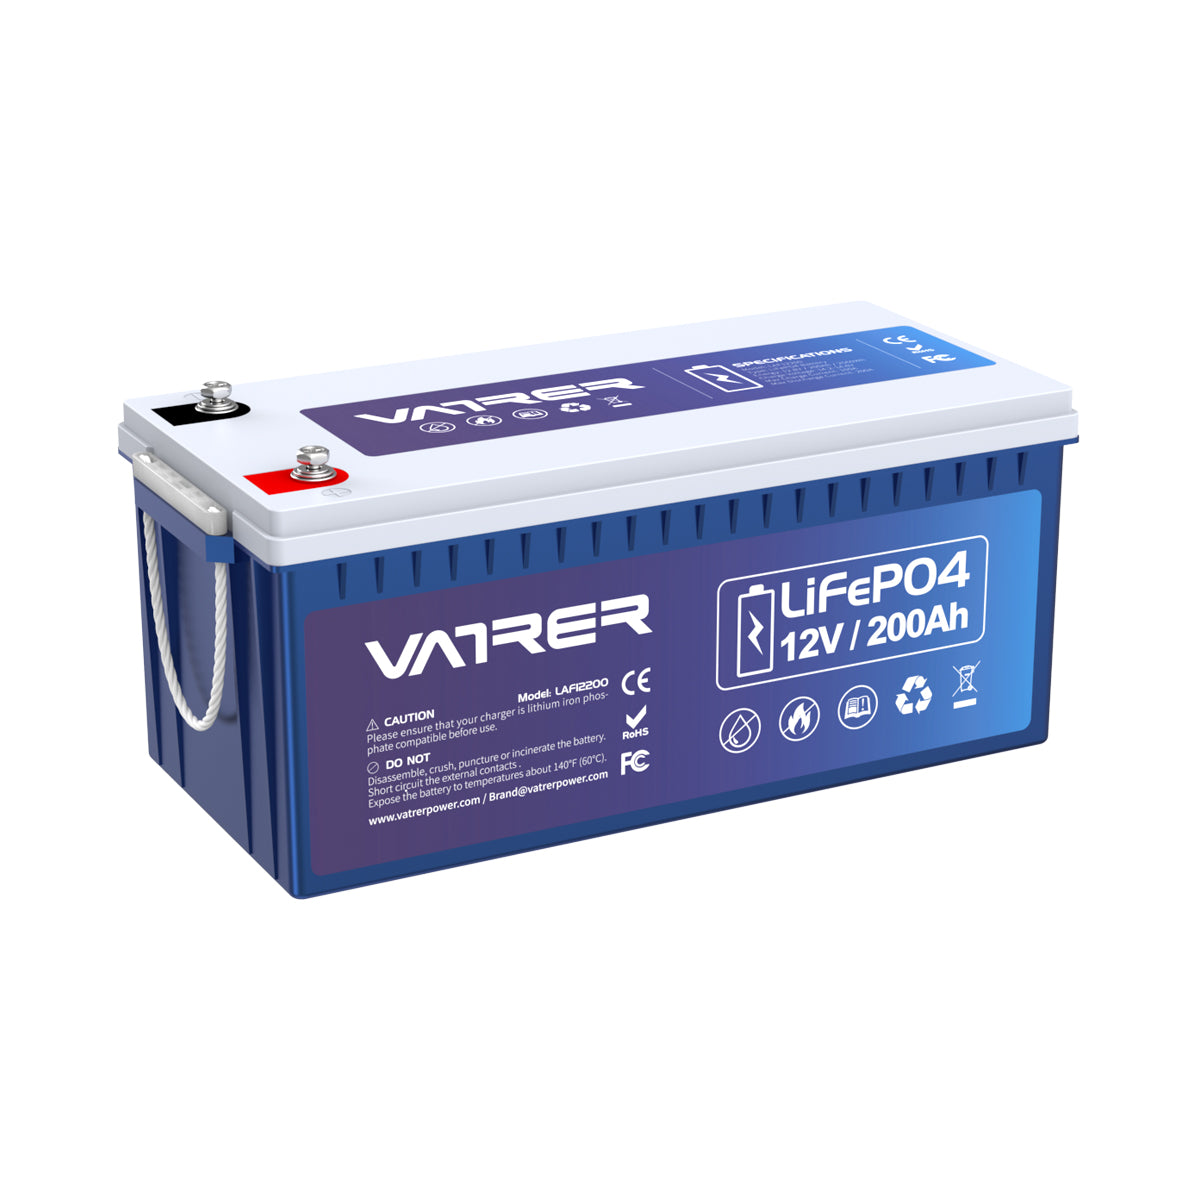 Batterie à cycle profond LiFePO4 12V 200Ah-coupure basse  température-Vatrer-Vatrer